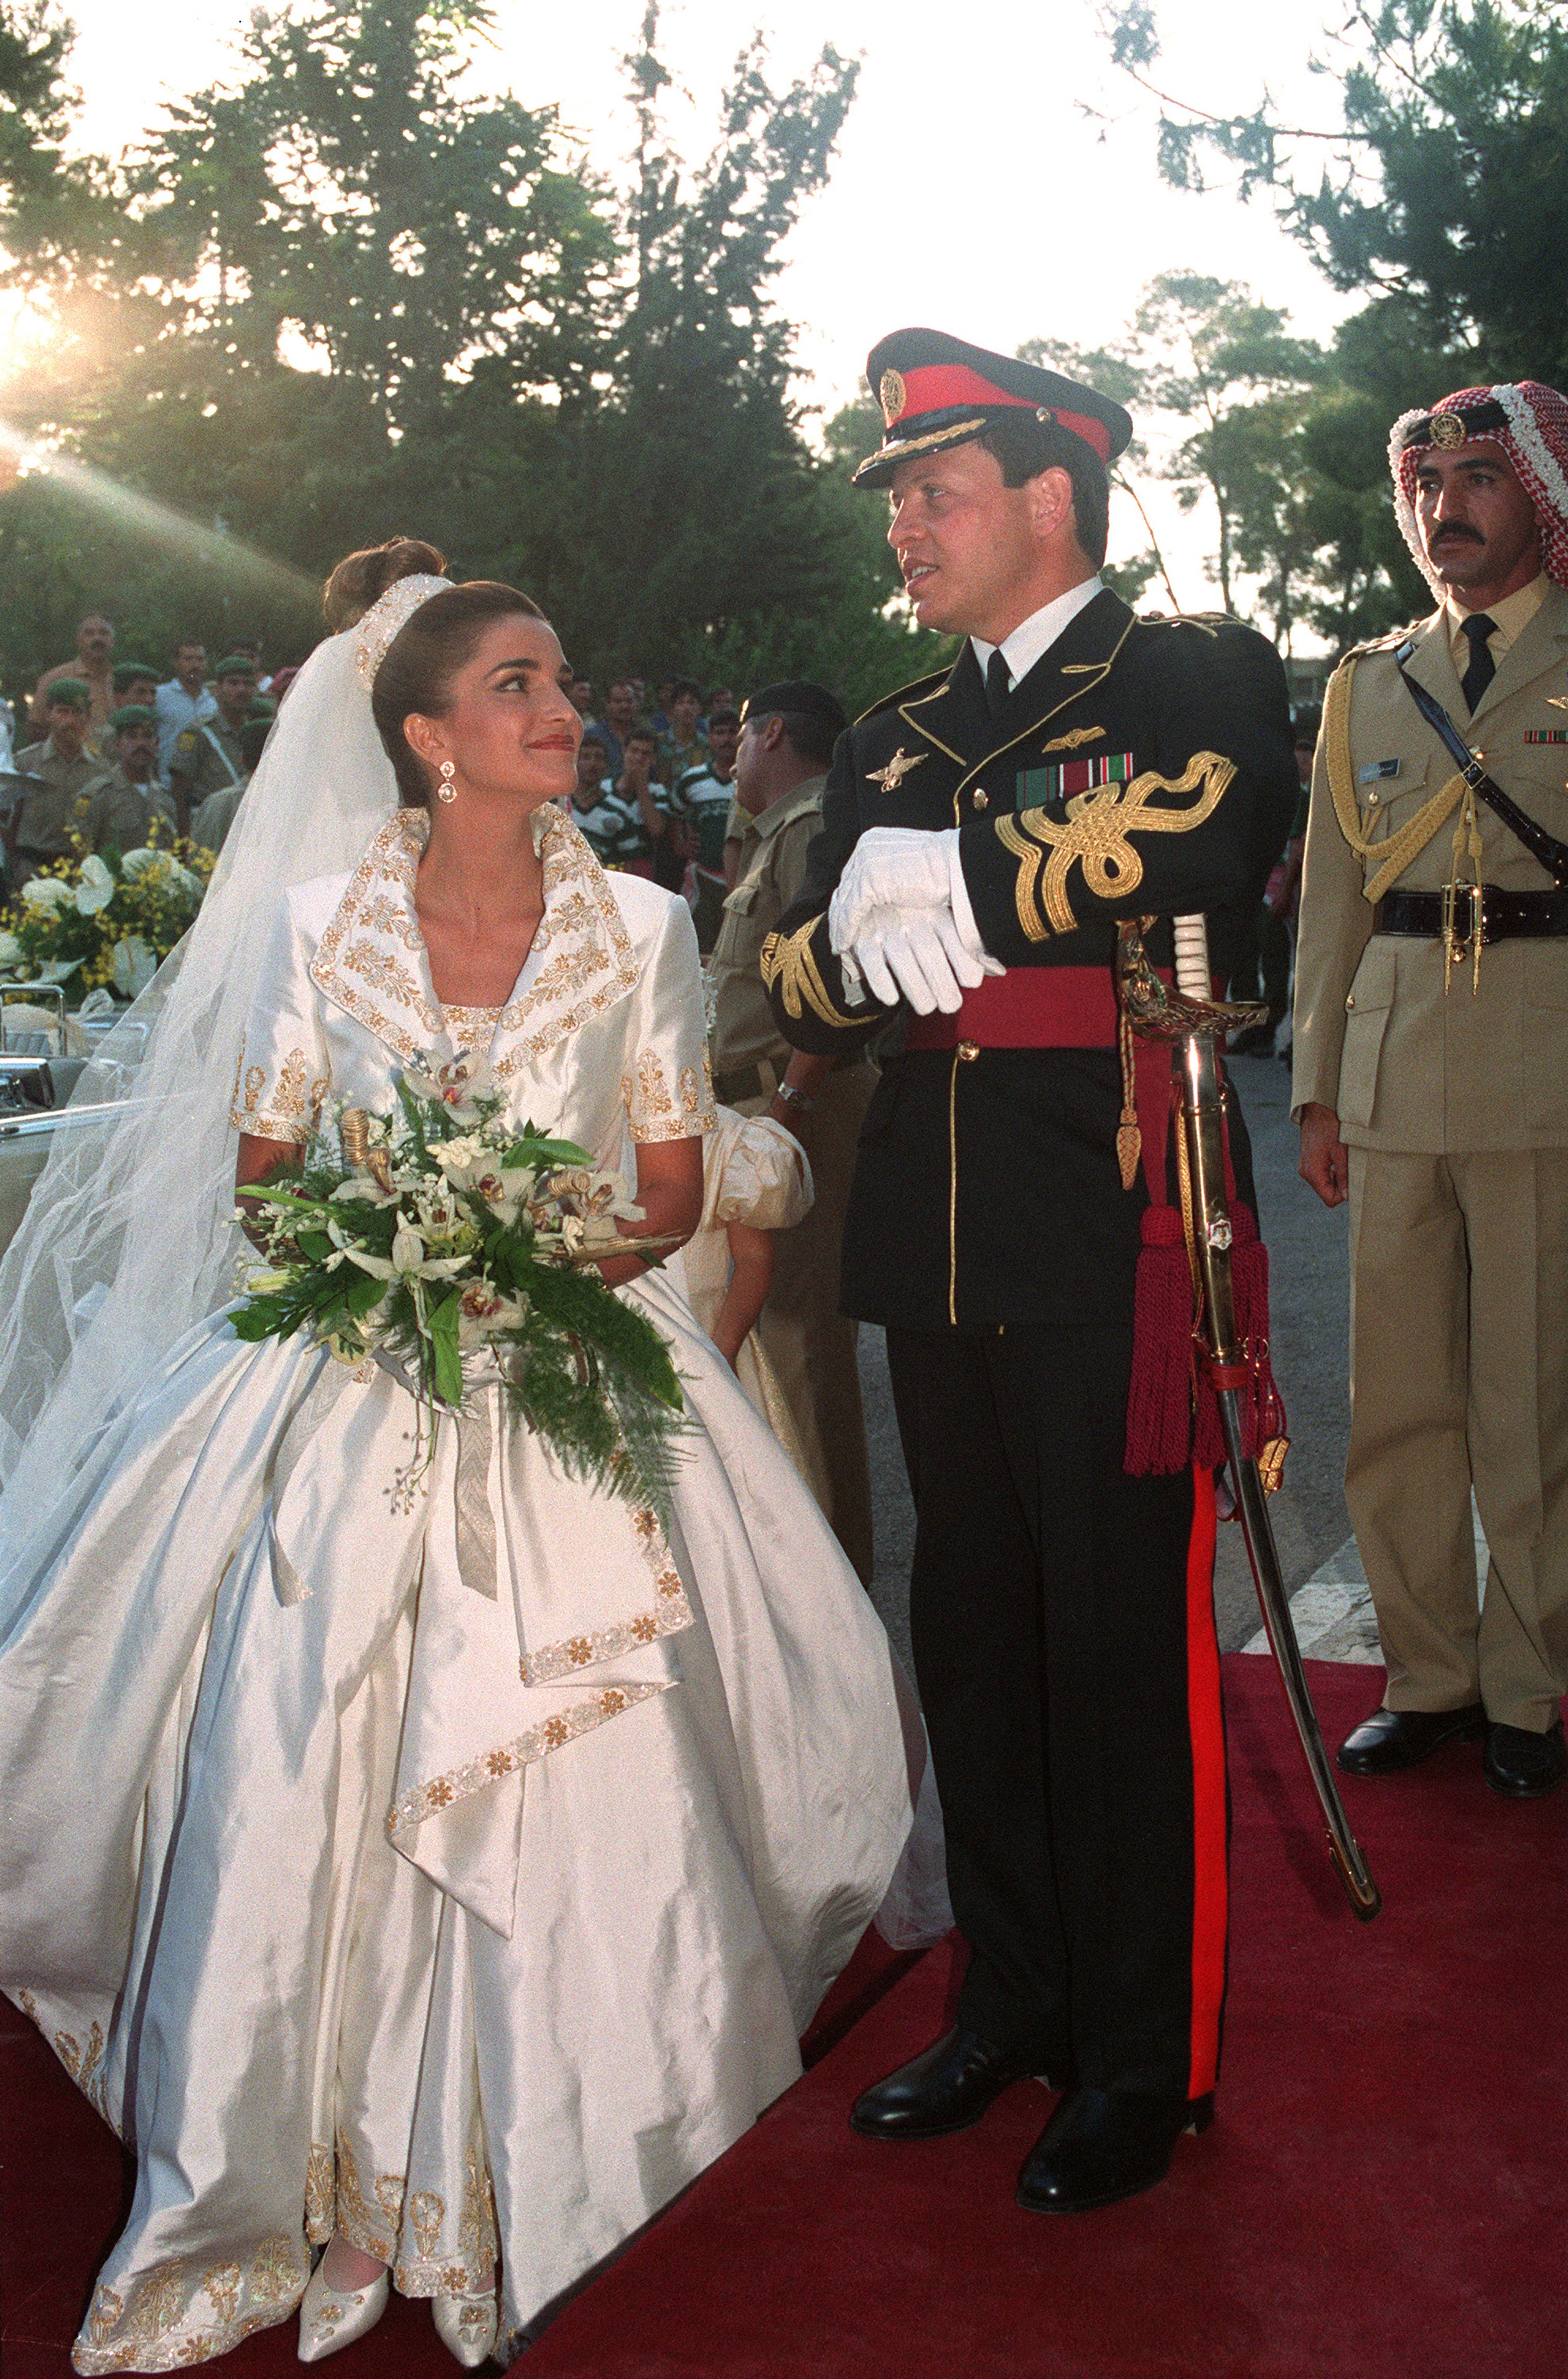 Draag je goud op je trouwdag? Waarom niet? Koningin Rania van Jordanië verlevendigde haar trouwjurk